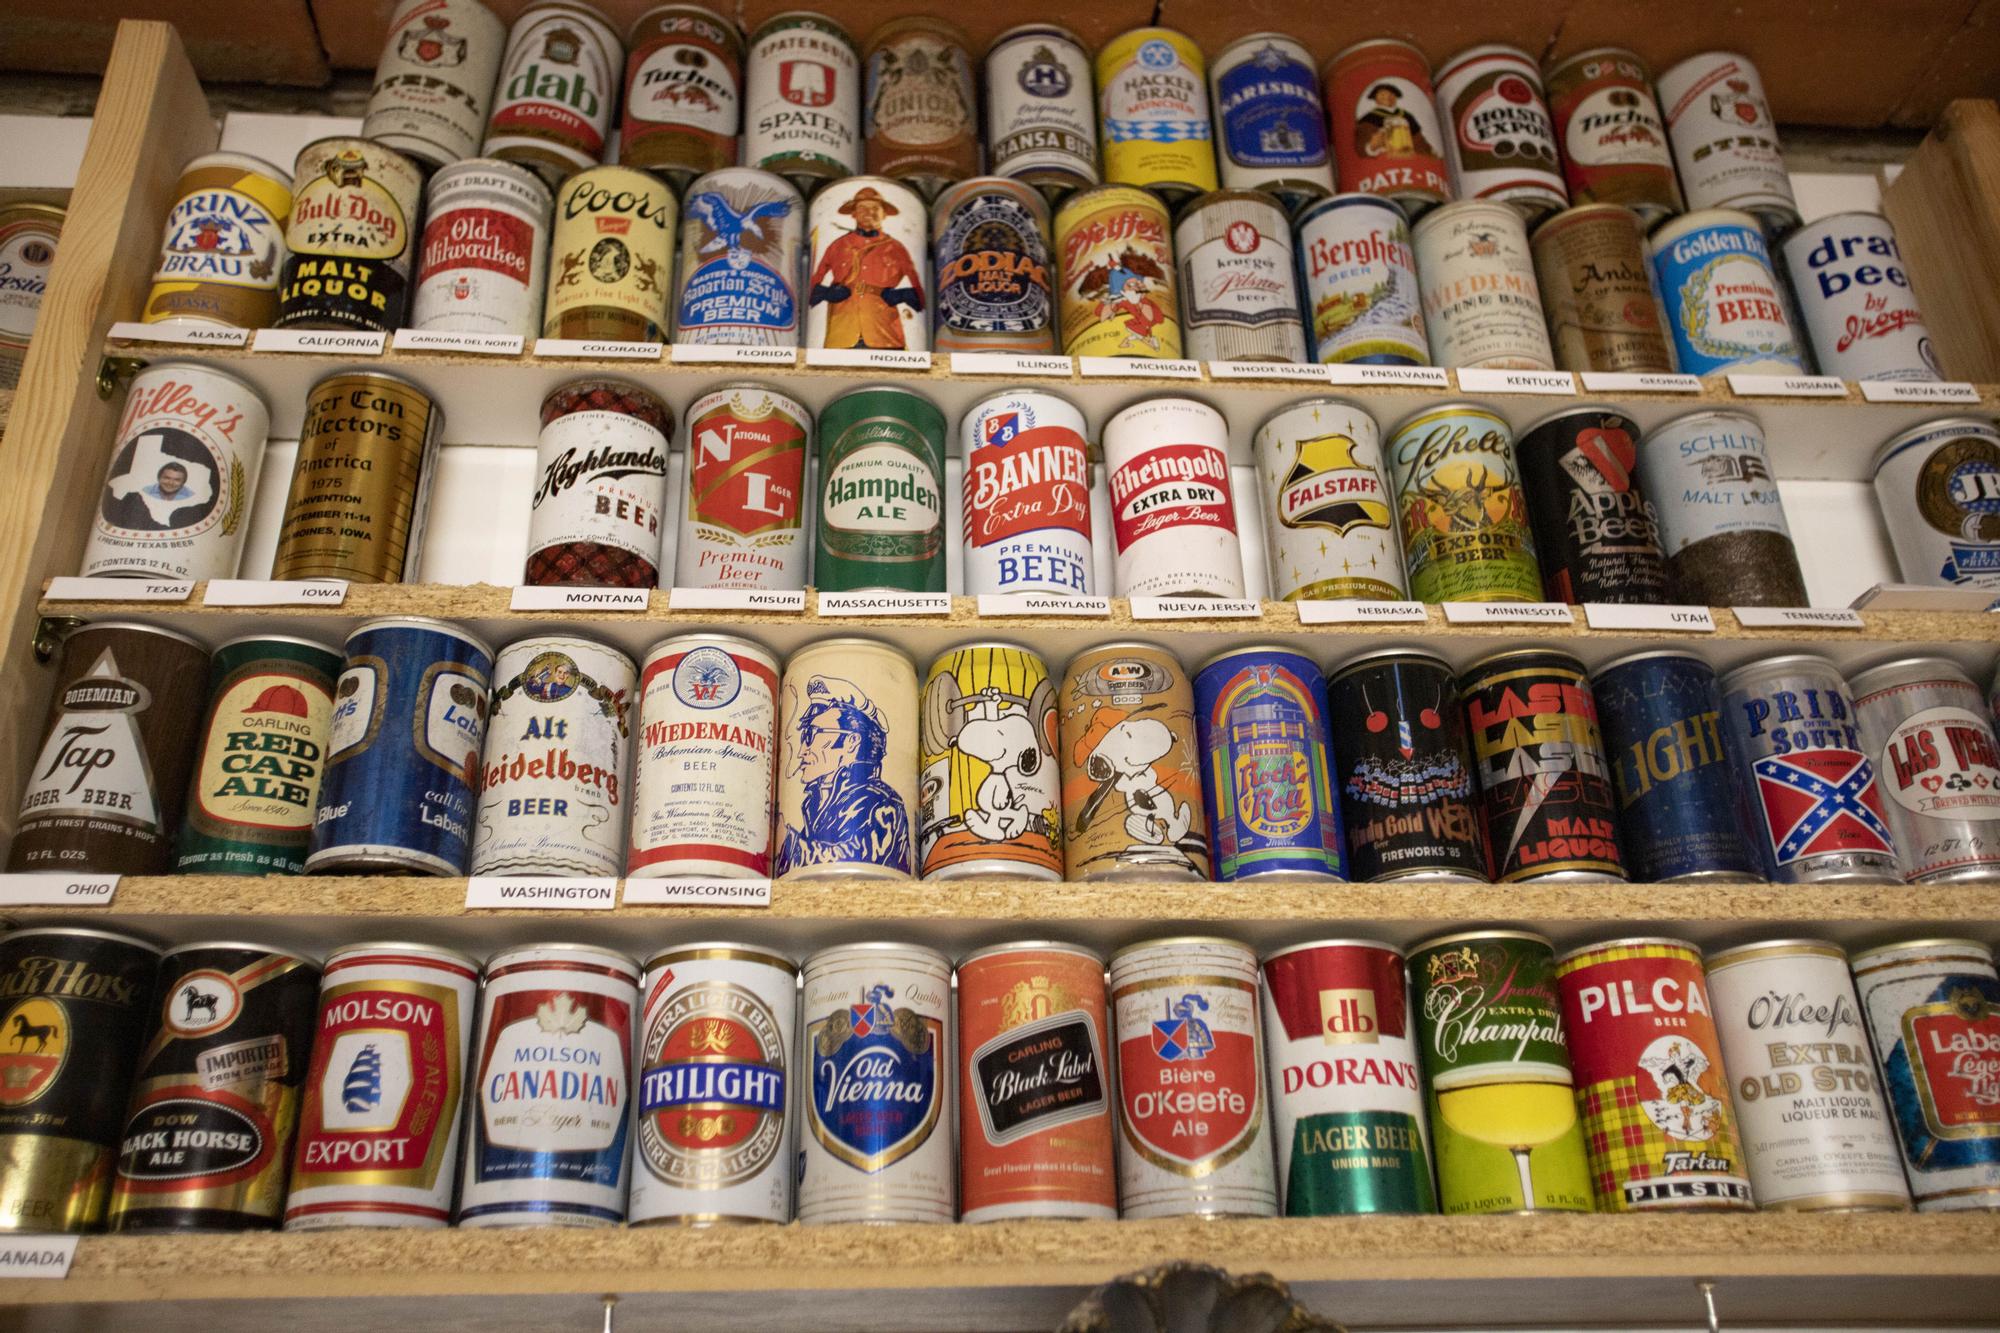 David Fortea atesora en Quesa la mayor colección de latas de cerveza de España